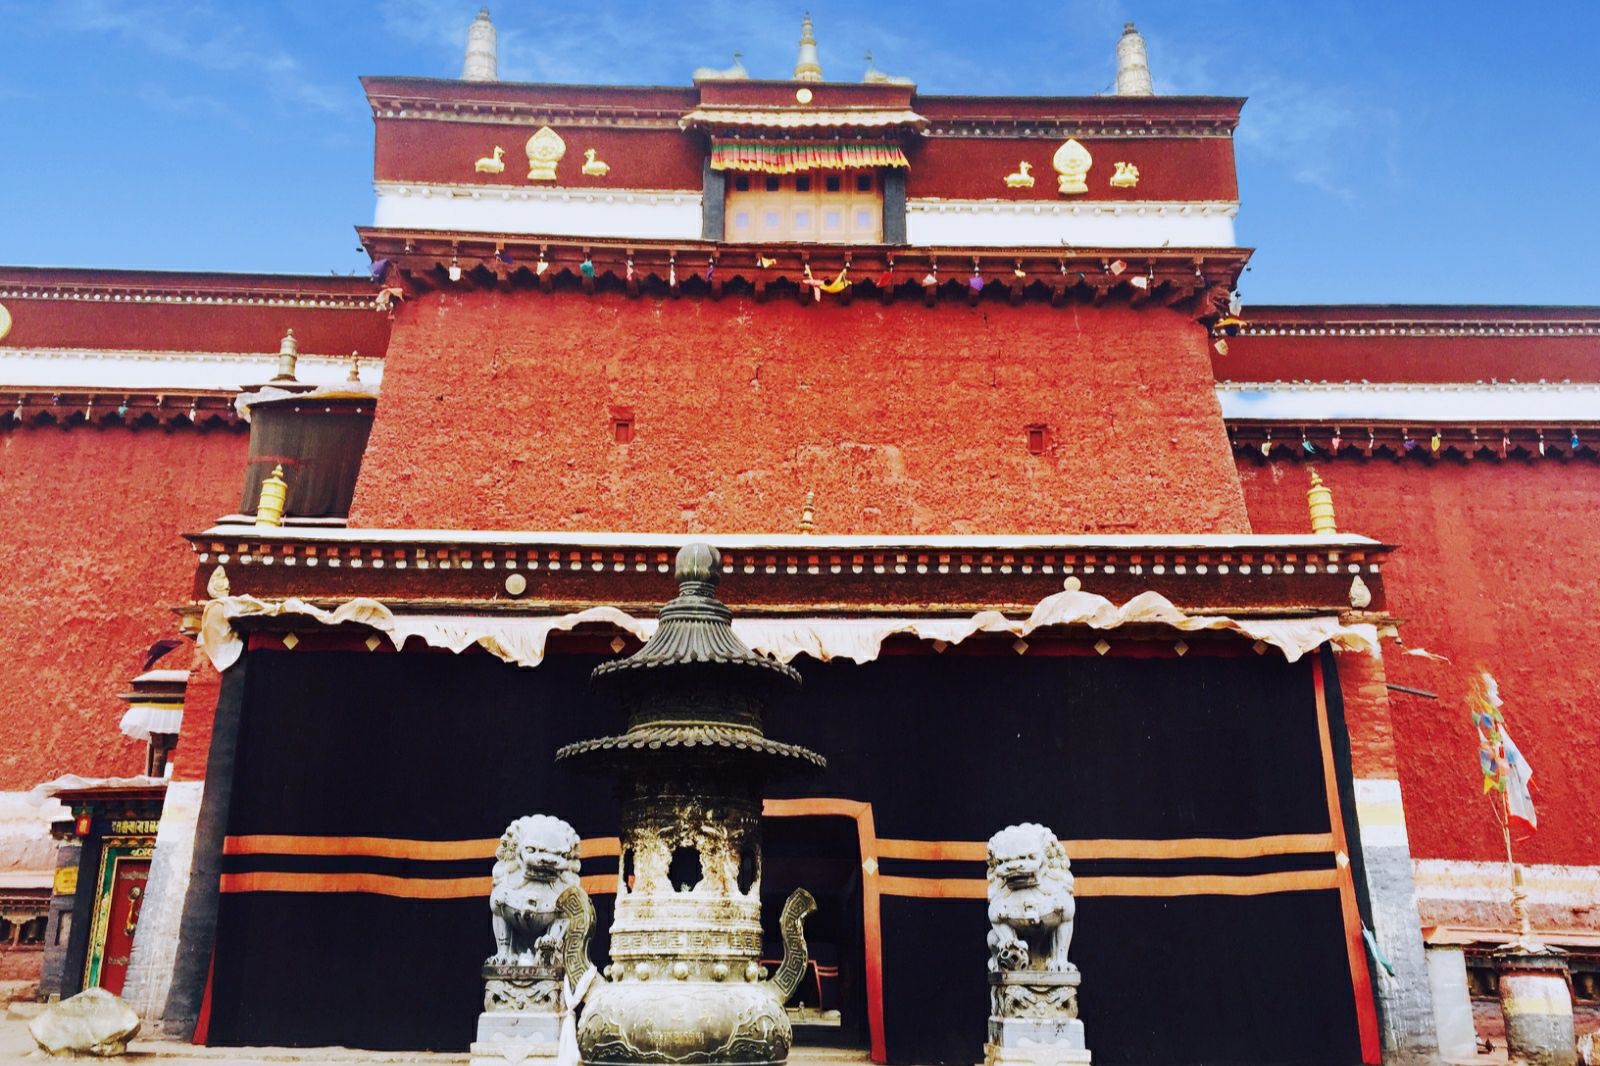 刚钦寺在日喀则萨迦县查速乡境内，距日喀则市45公里，海拔3800米。寺庙始建于1447年，绝对是五百